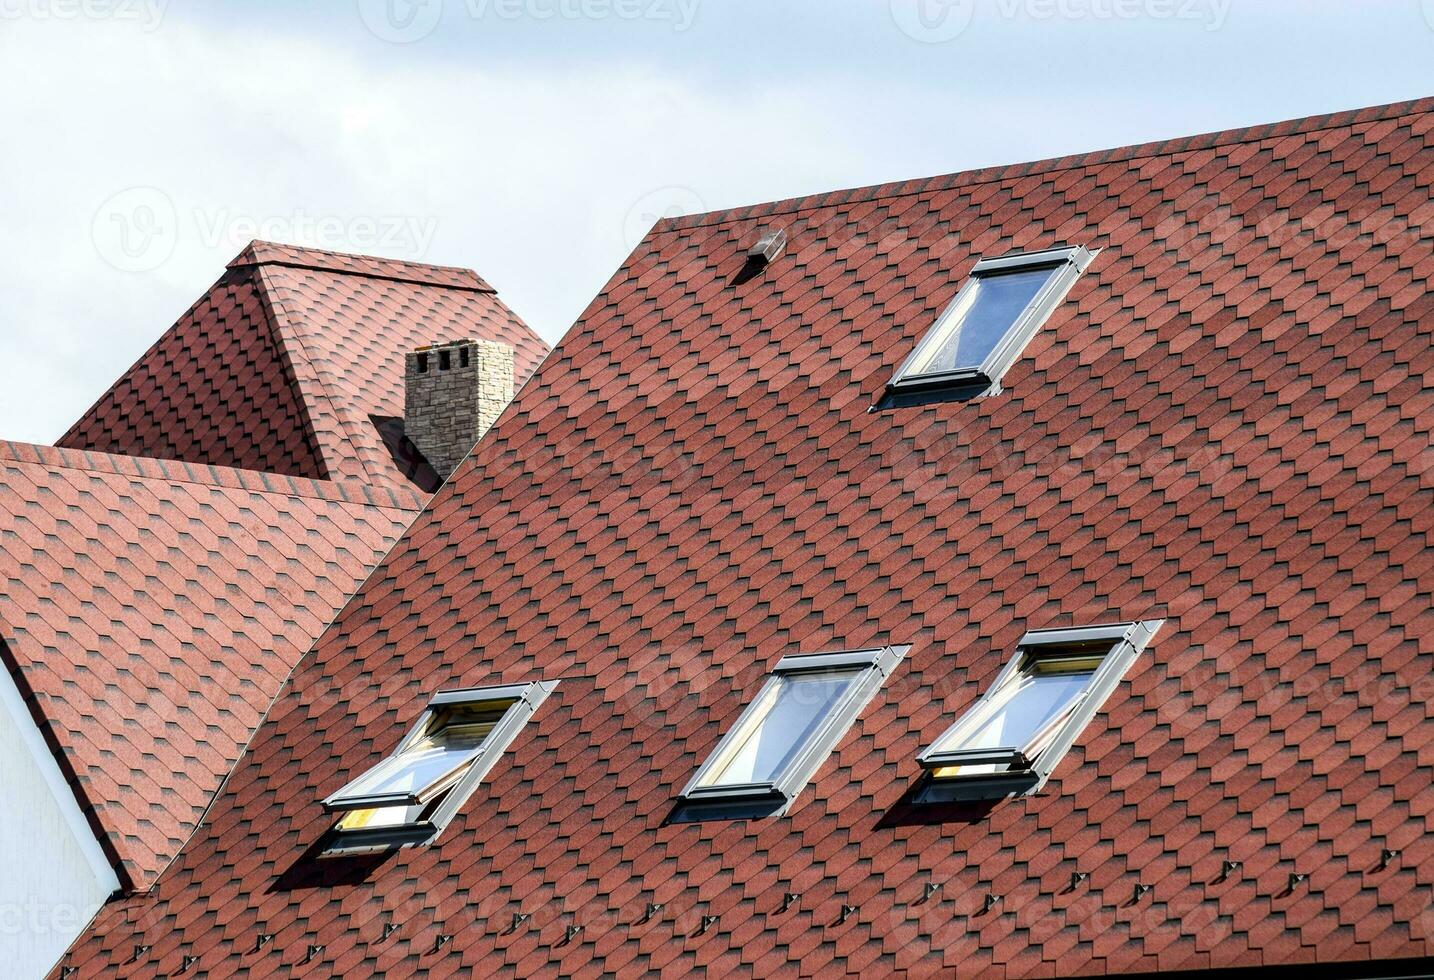 telha metálica decorativa em um telhado foto